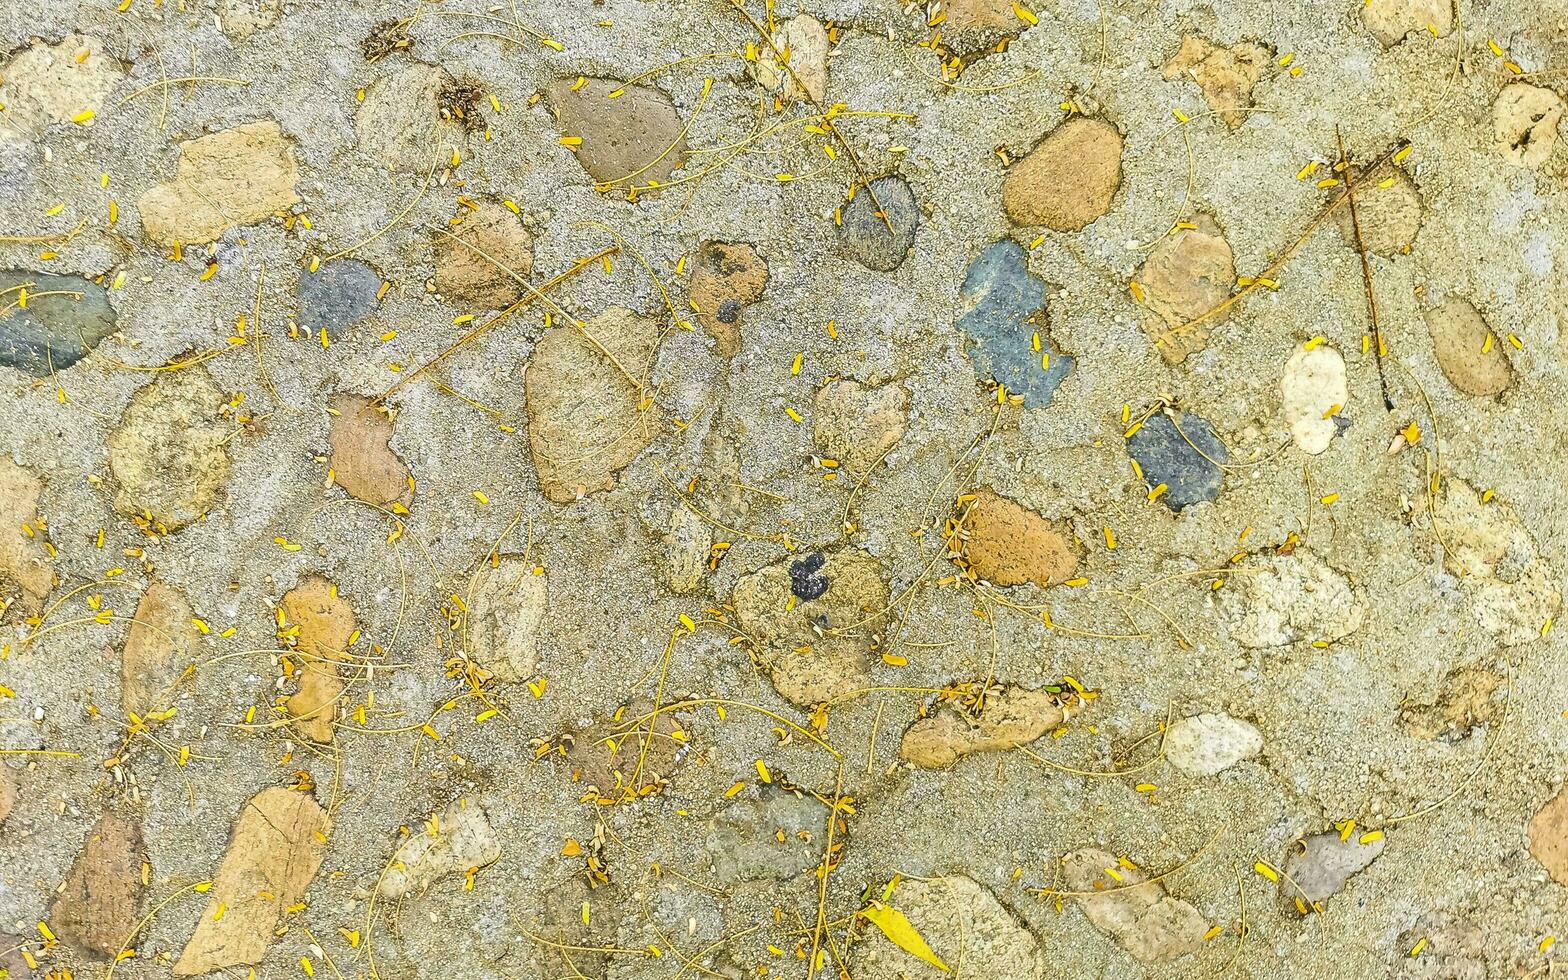 textura detalle de pared con rocas piedras ladrillo ladrillos México. foto